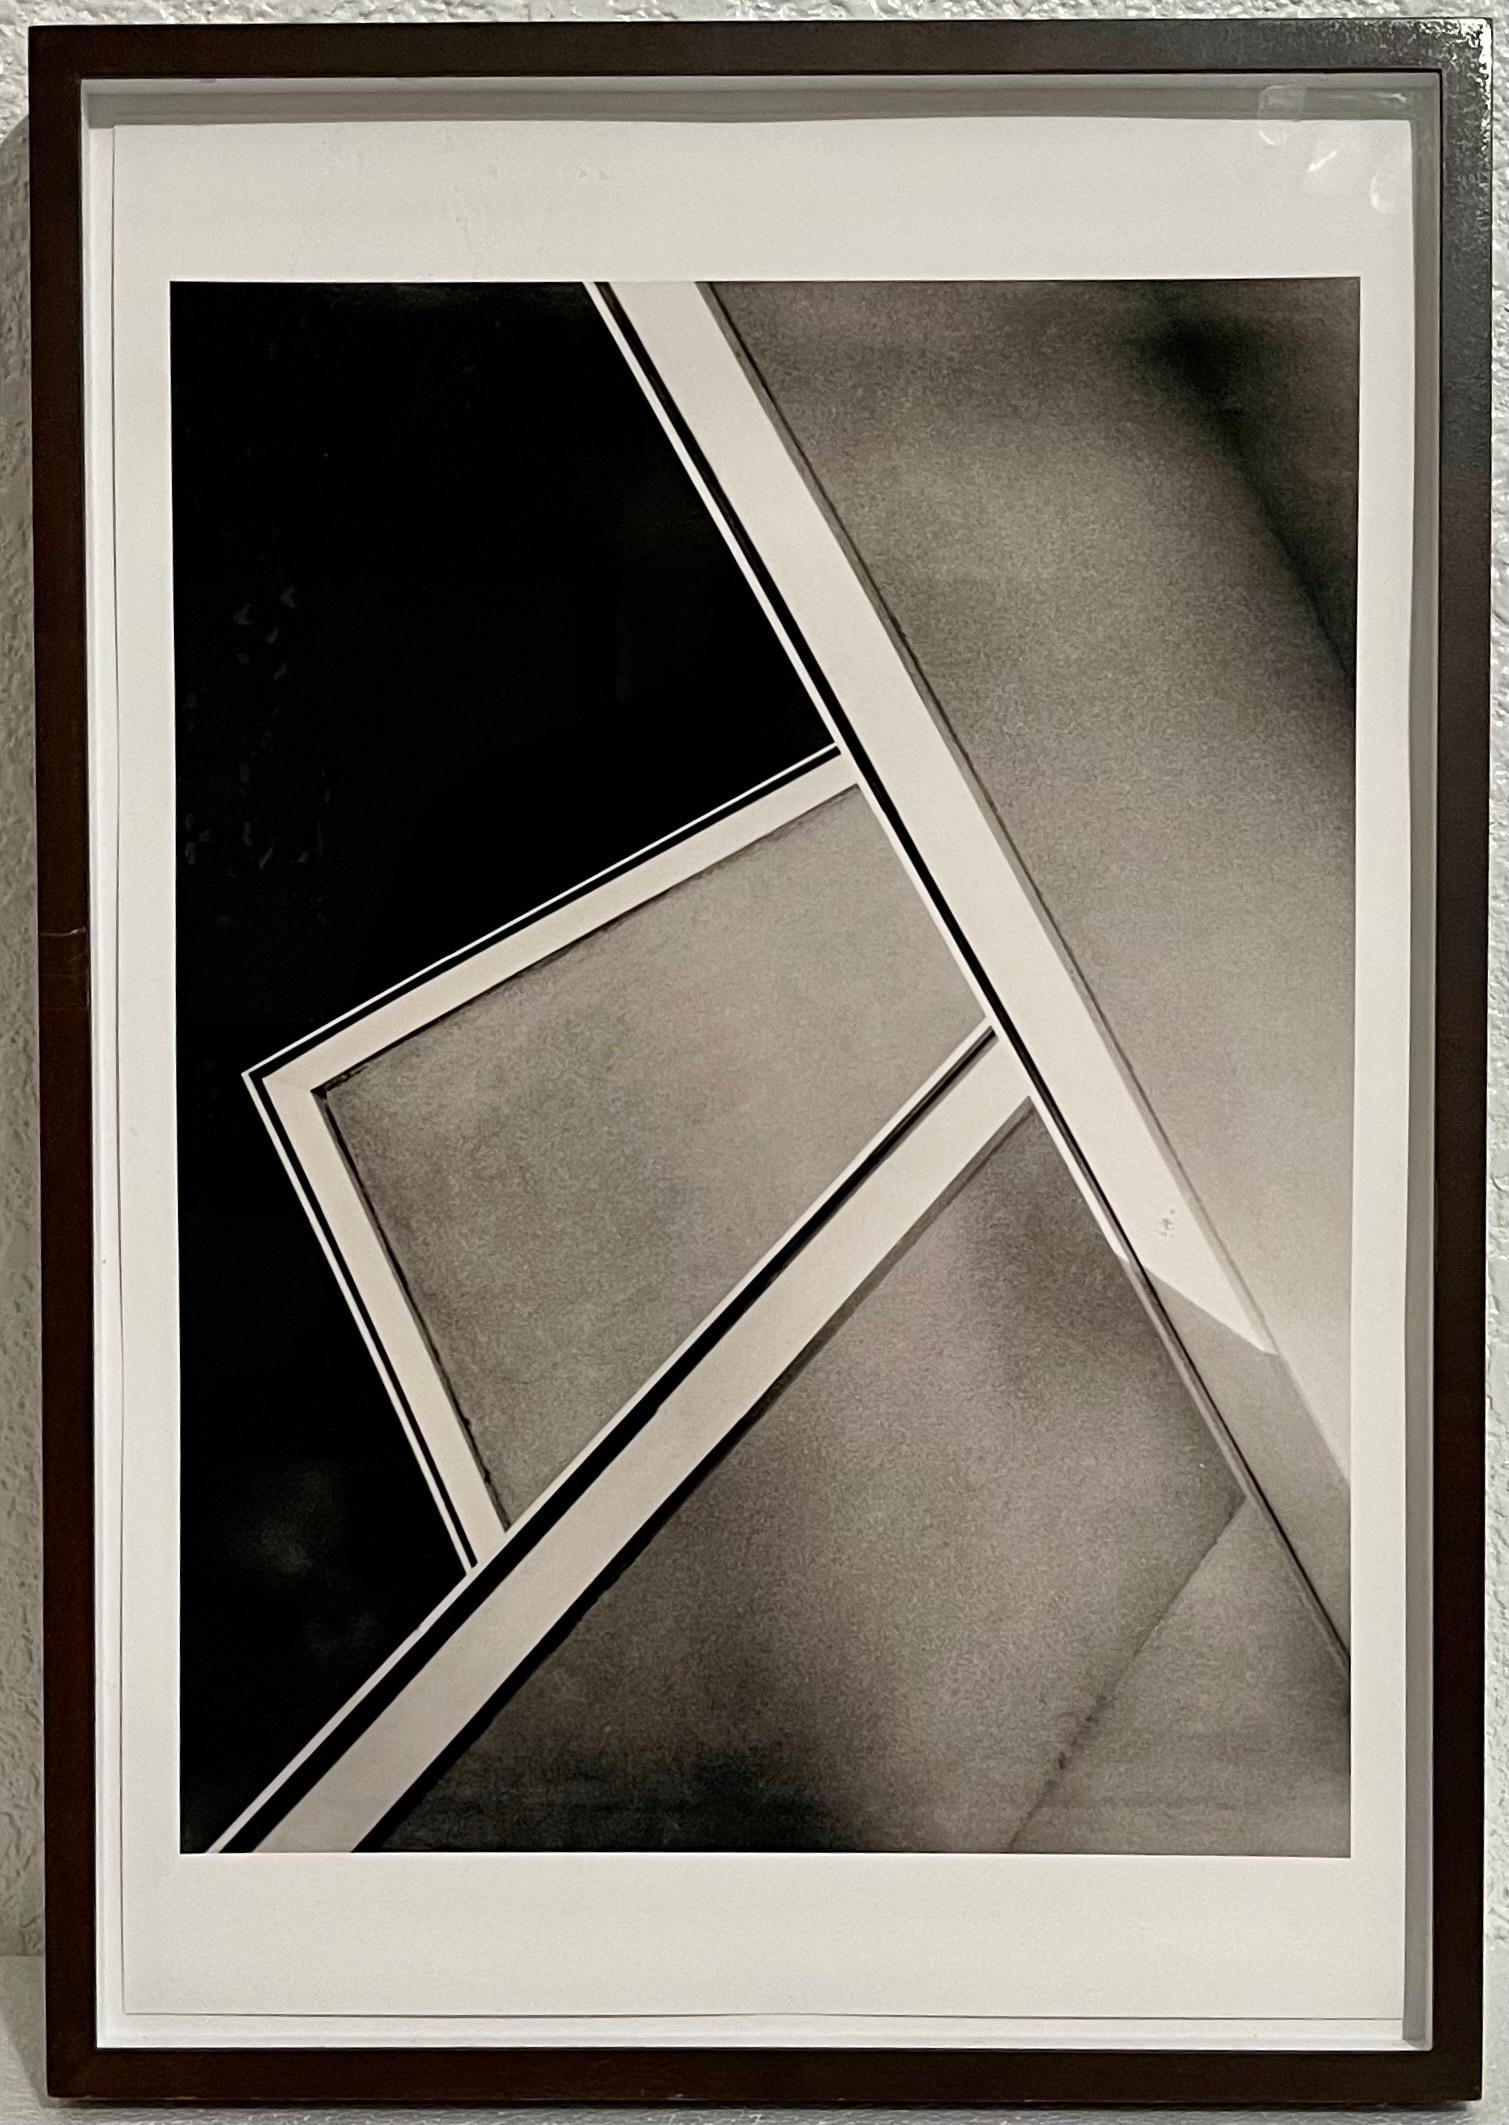 José Yalenti, (1895-1967) Brasilianischer Fotograf
"Beiras" (Seiten) 
Foto, nummeriert 5/15, CIRCA 1950, (später gedruckt) auf Premium-Luster-Fotopapier mit Ultrachrom-Tinte. 
Kunst: 15" H x  11" B; Rahmen: 20 1/4" H x 14 1/4" B. 
Provenienz: